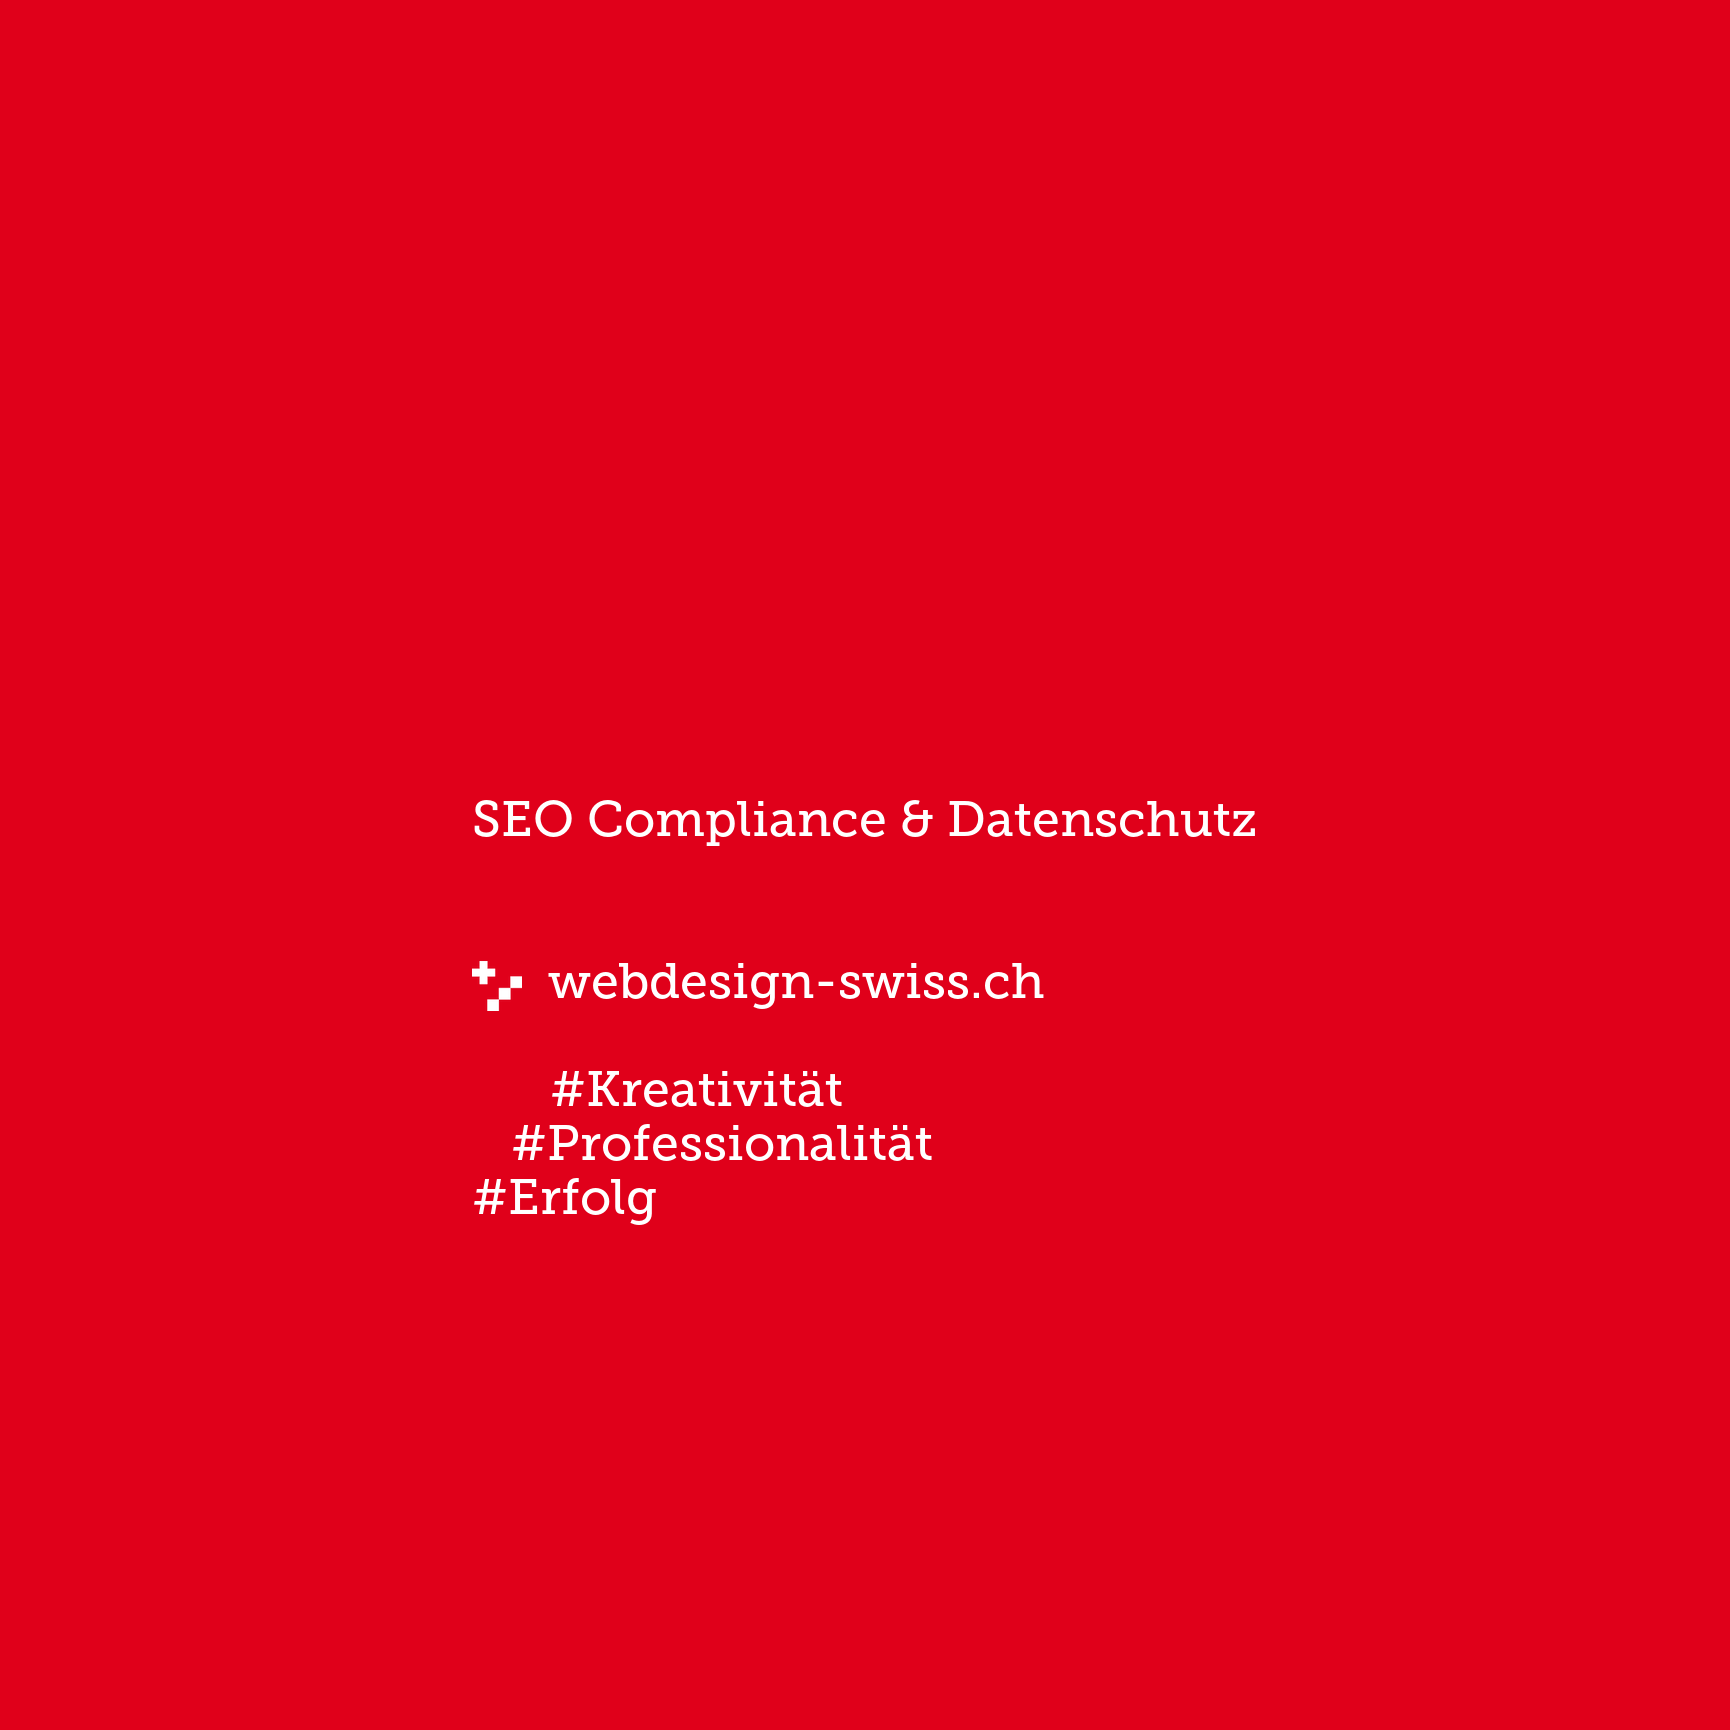 SEO Compliance & Datenschutz